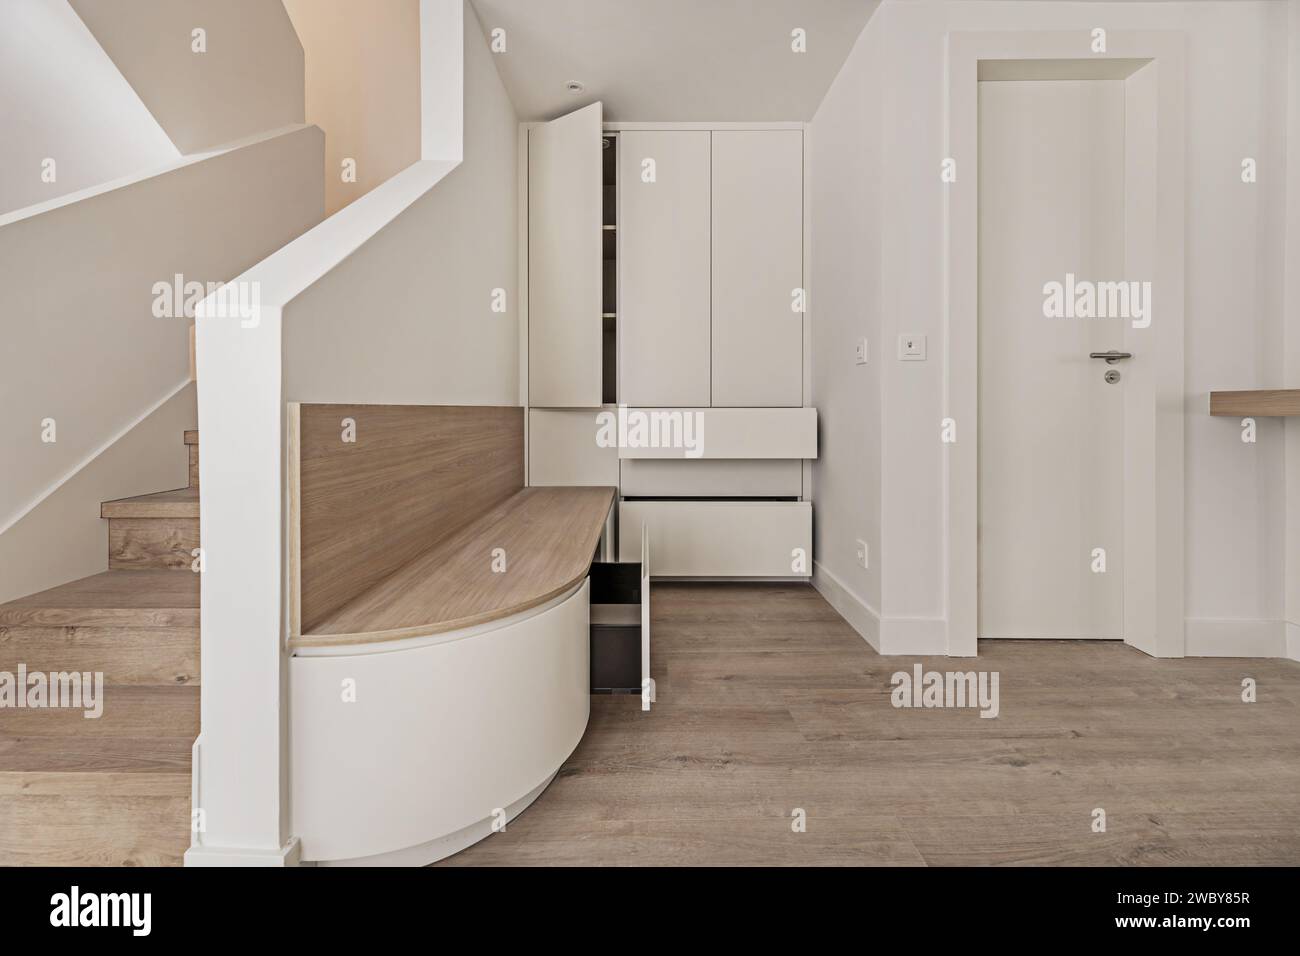 Corridoio di una casa moderna recentemente rinnovata con una panca in legno di quercia bianca con cassetti e un mobile bianco vicino alle scale per salire Foto Stock